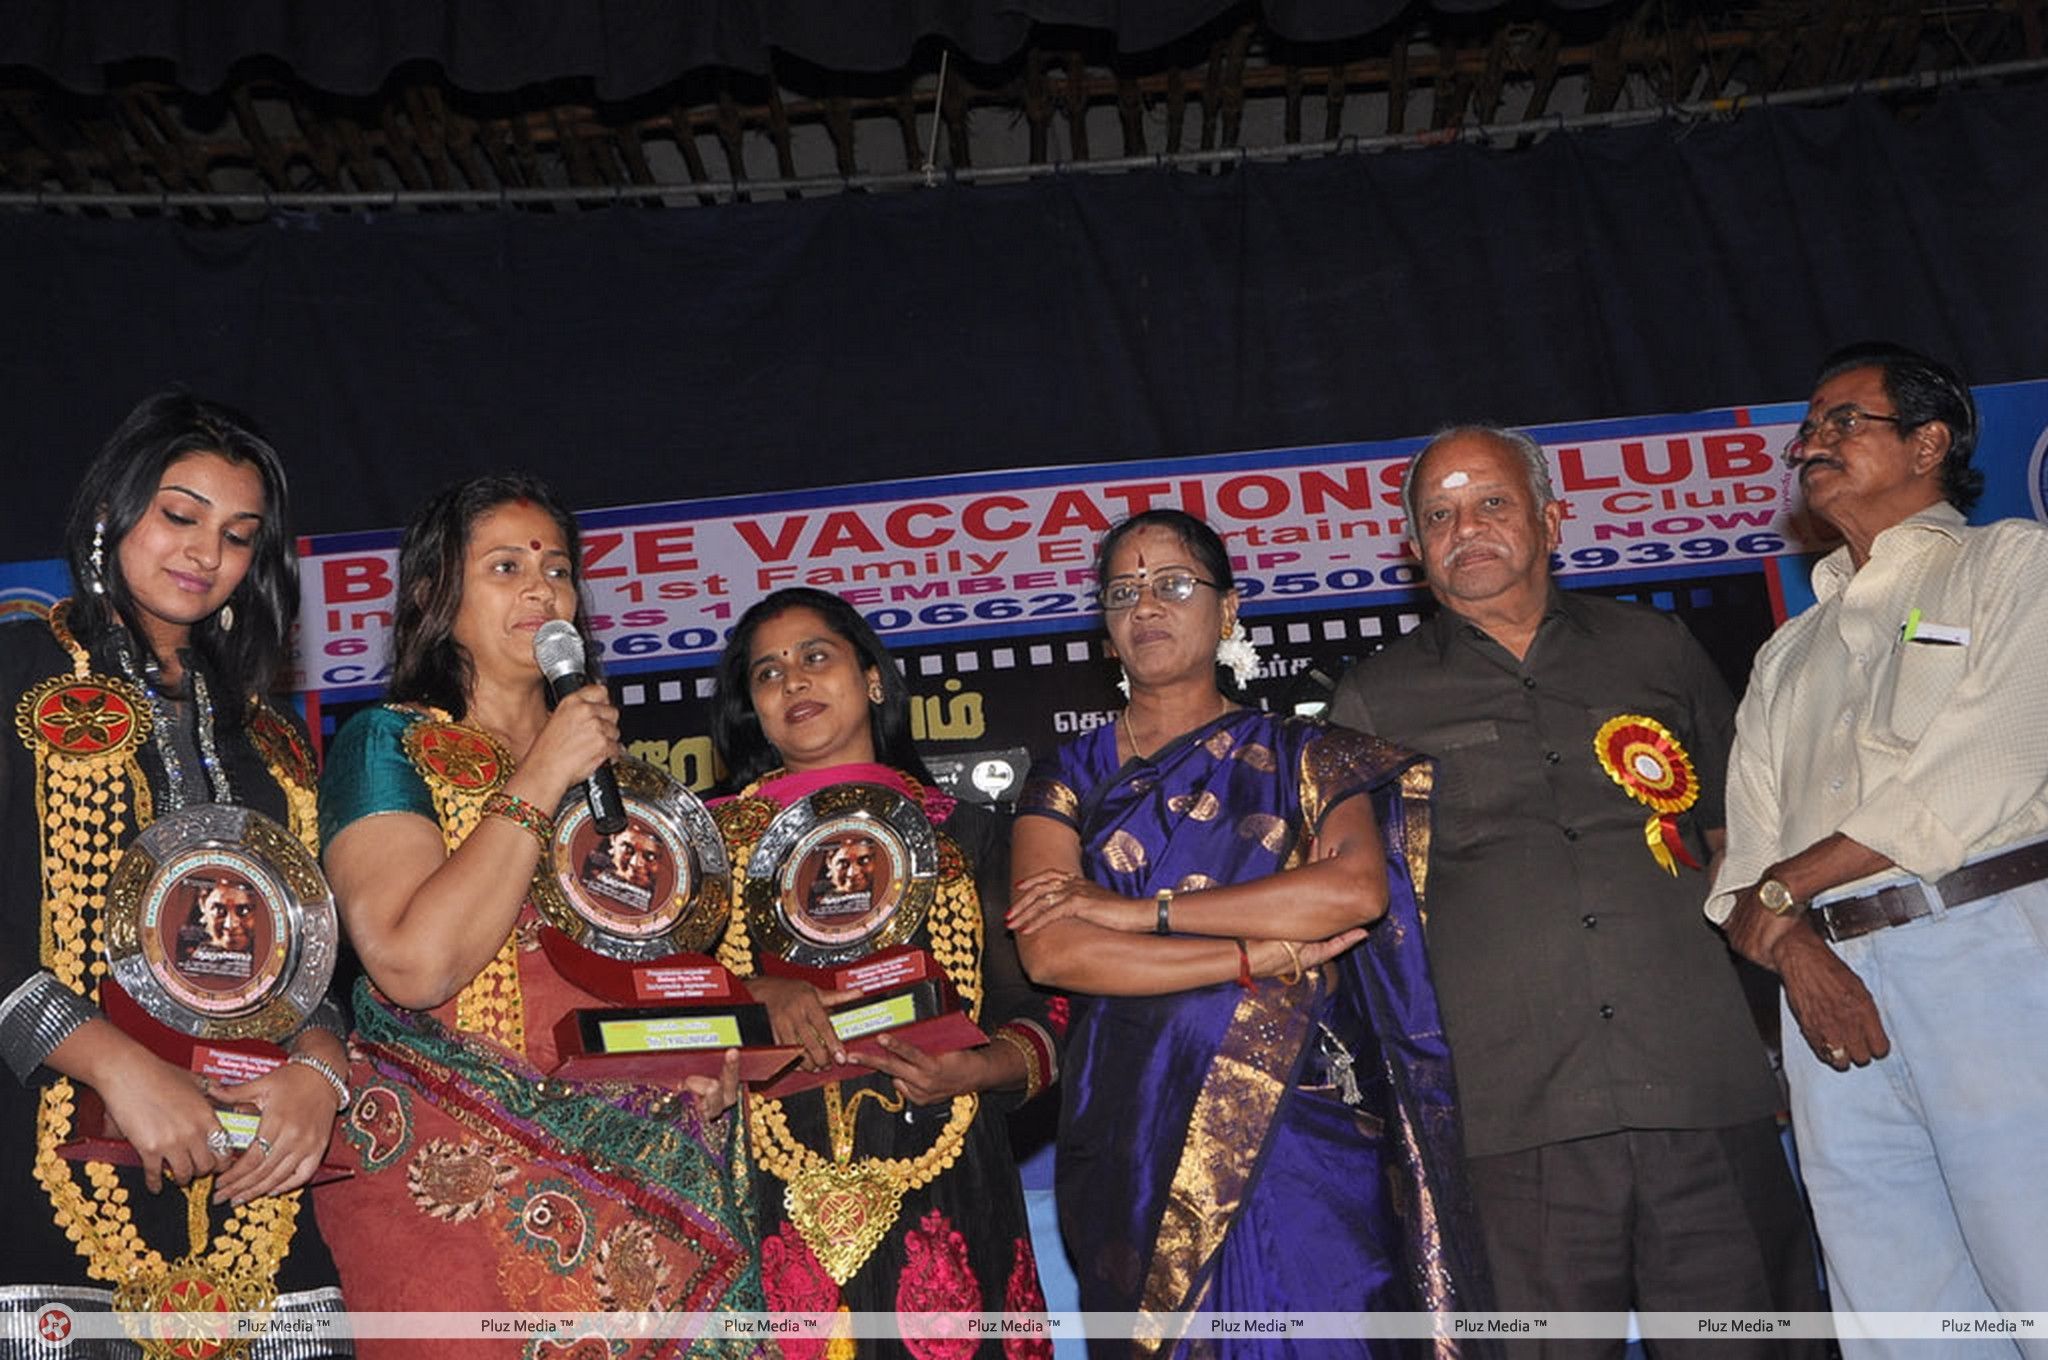 Aarohanam Film Felicitated Event Stills | Picture 326605